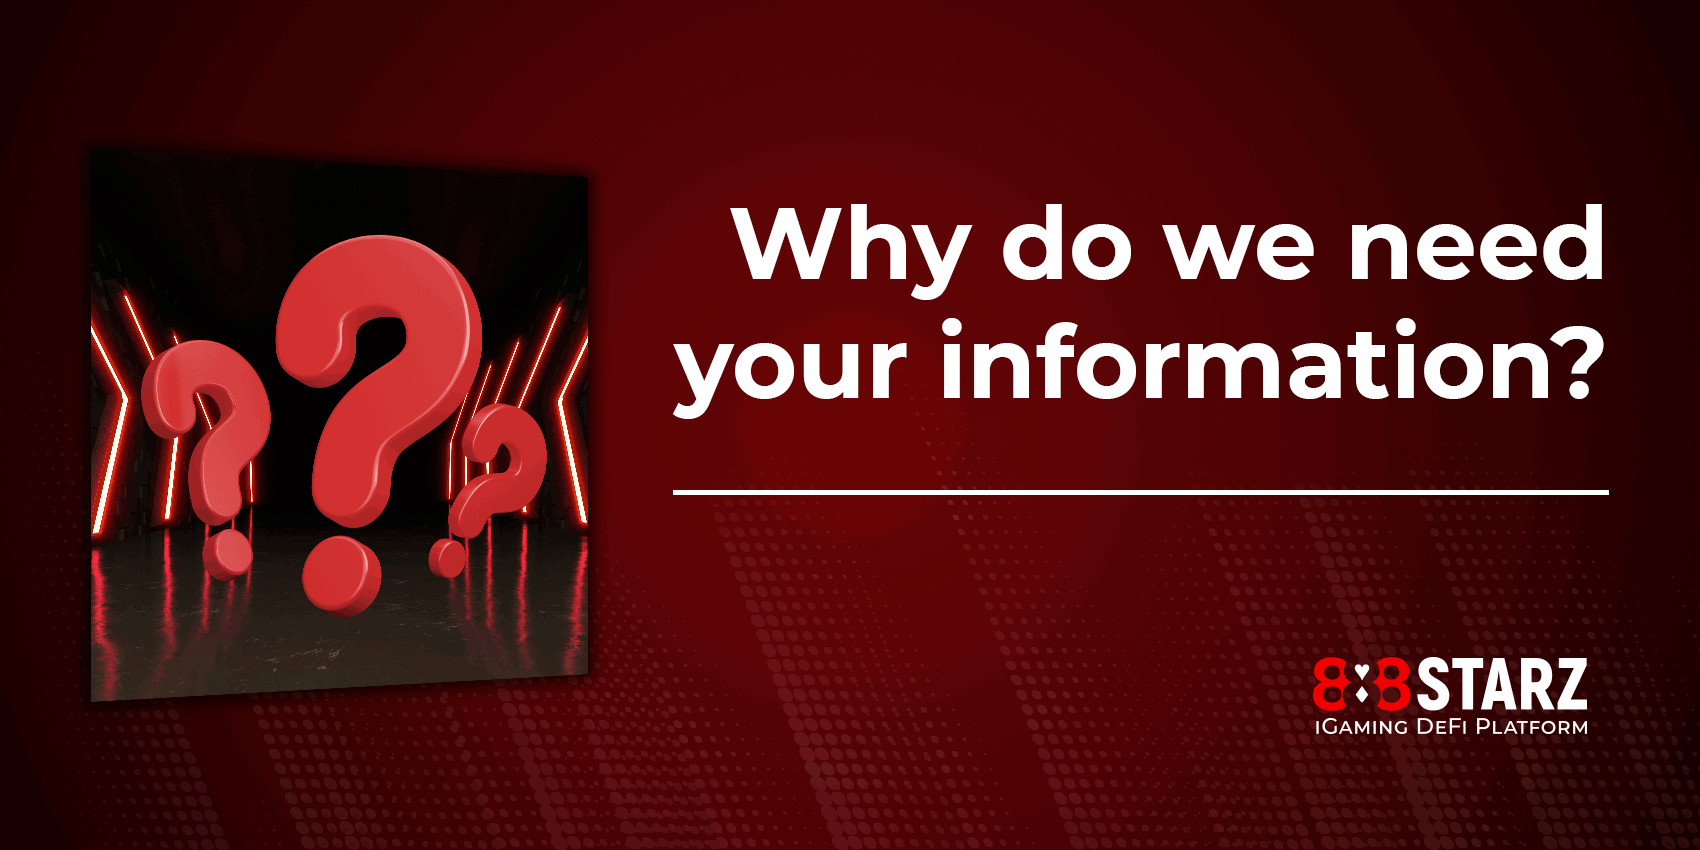 हमें आपकी जानकारी की आवश्यकता क्यों है?